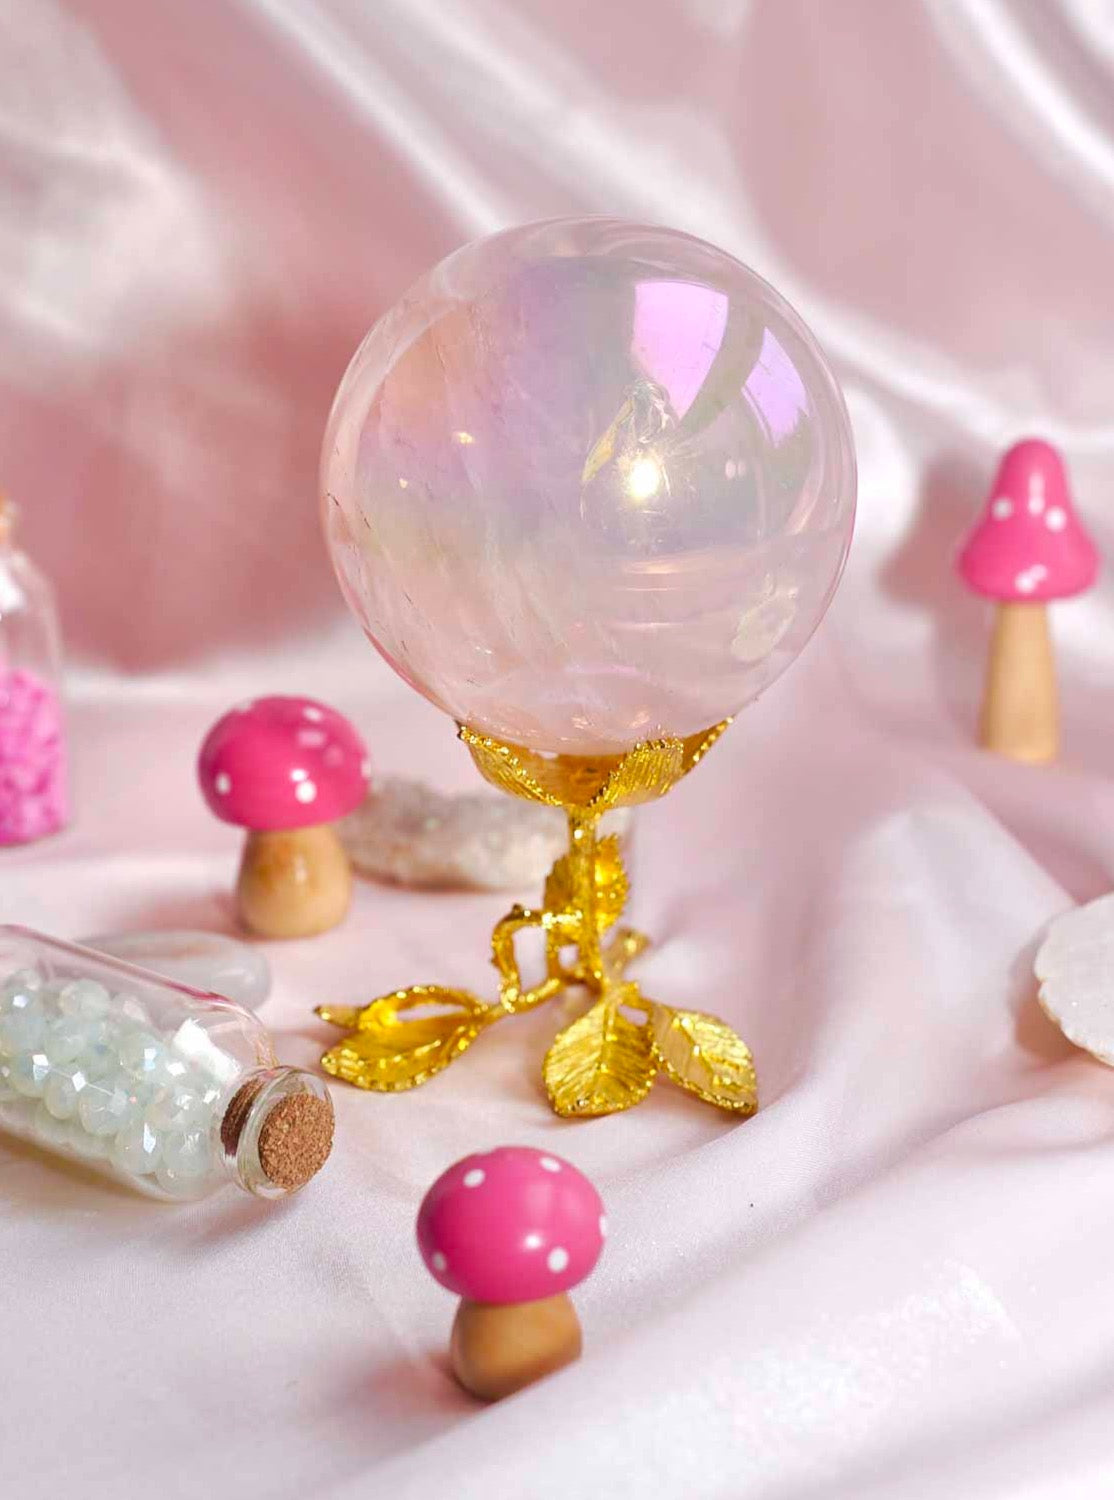 Hot Pink Aura Quartz Sphere - Dream Den Crystals